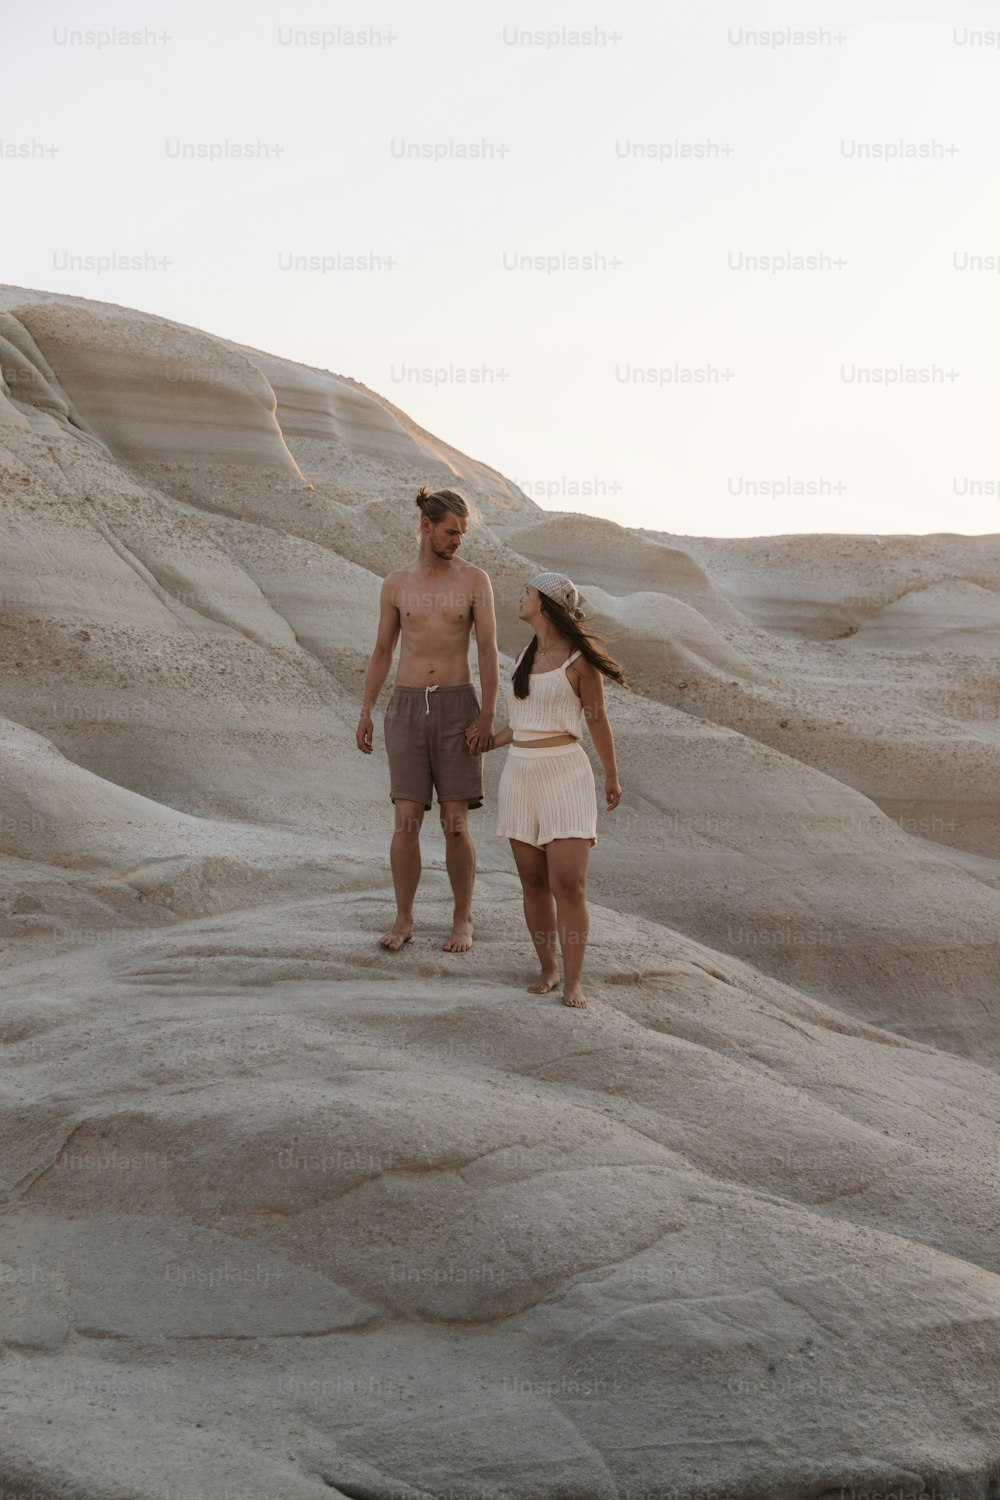 Un uomo e una donna camminano nel deserto